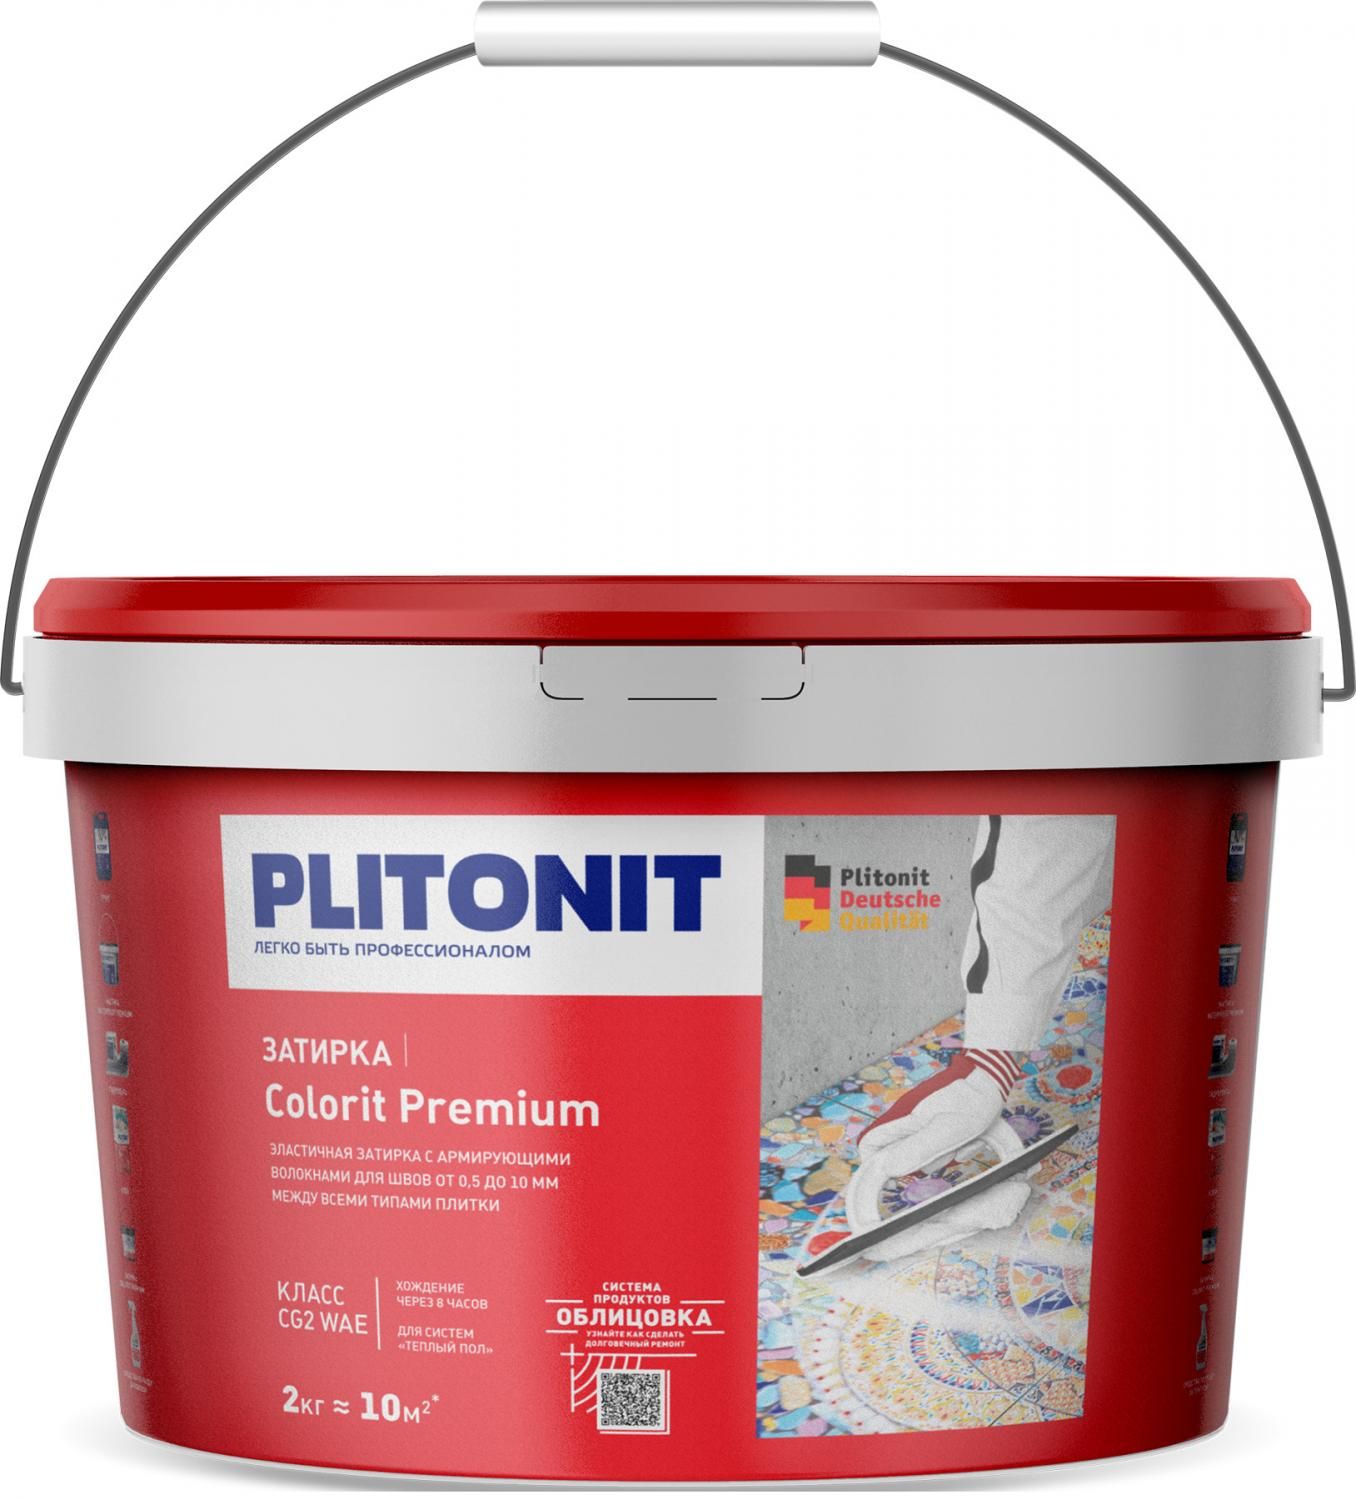 Купить Затирка Plitonit Colorit Premium светло-бежевая 2 кг цементная